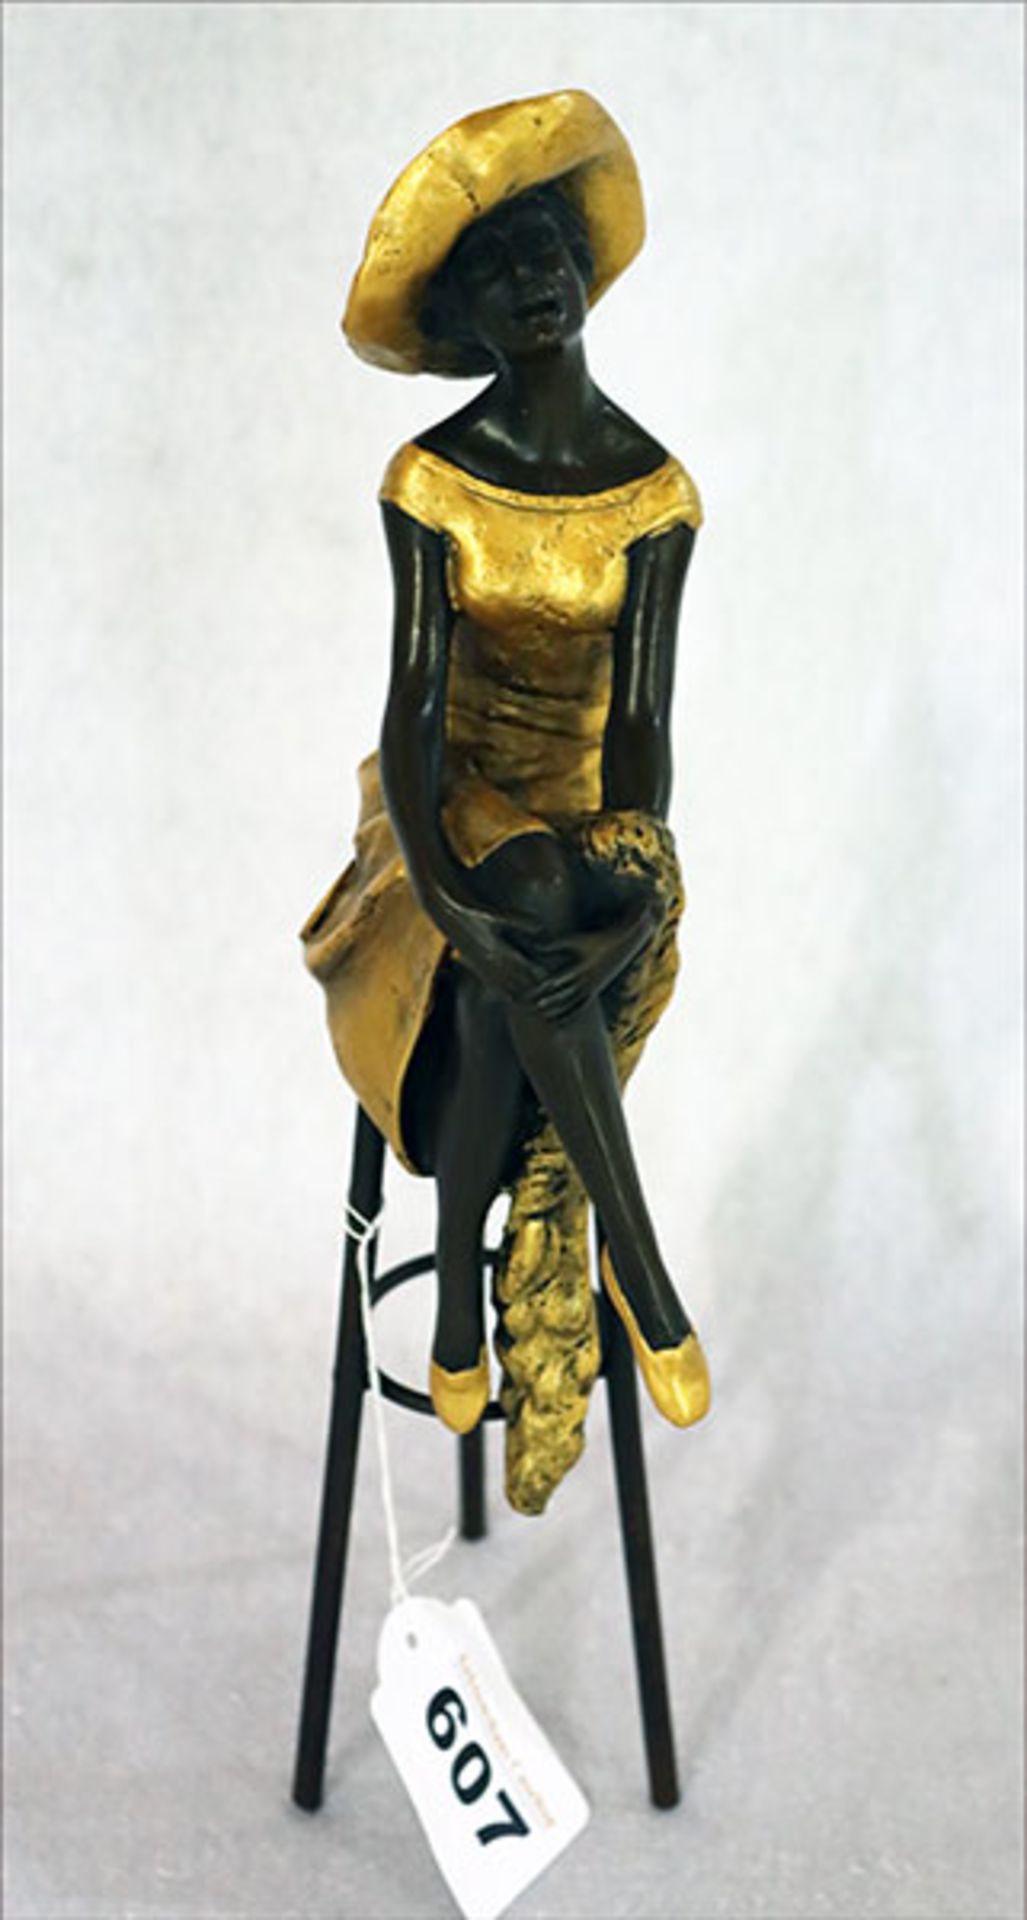 Metall Figur 'Frau auf Barhocker', teils Gold bemalt, H 28 cm